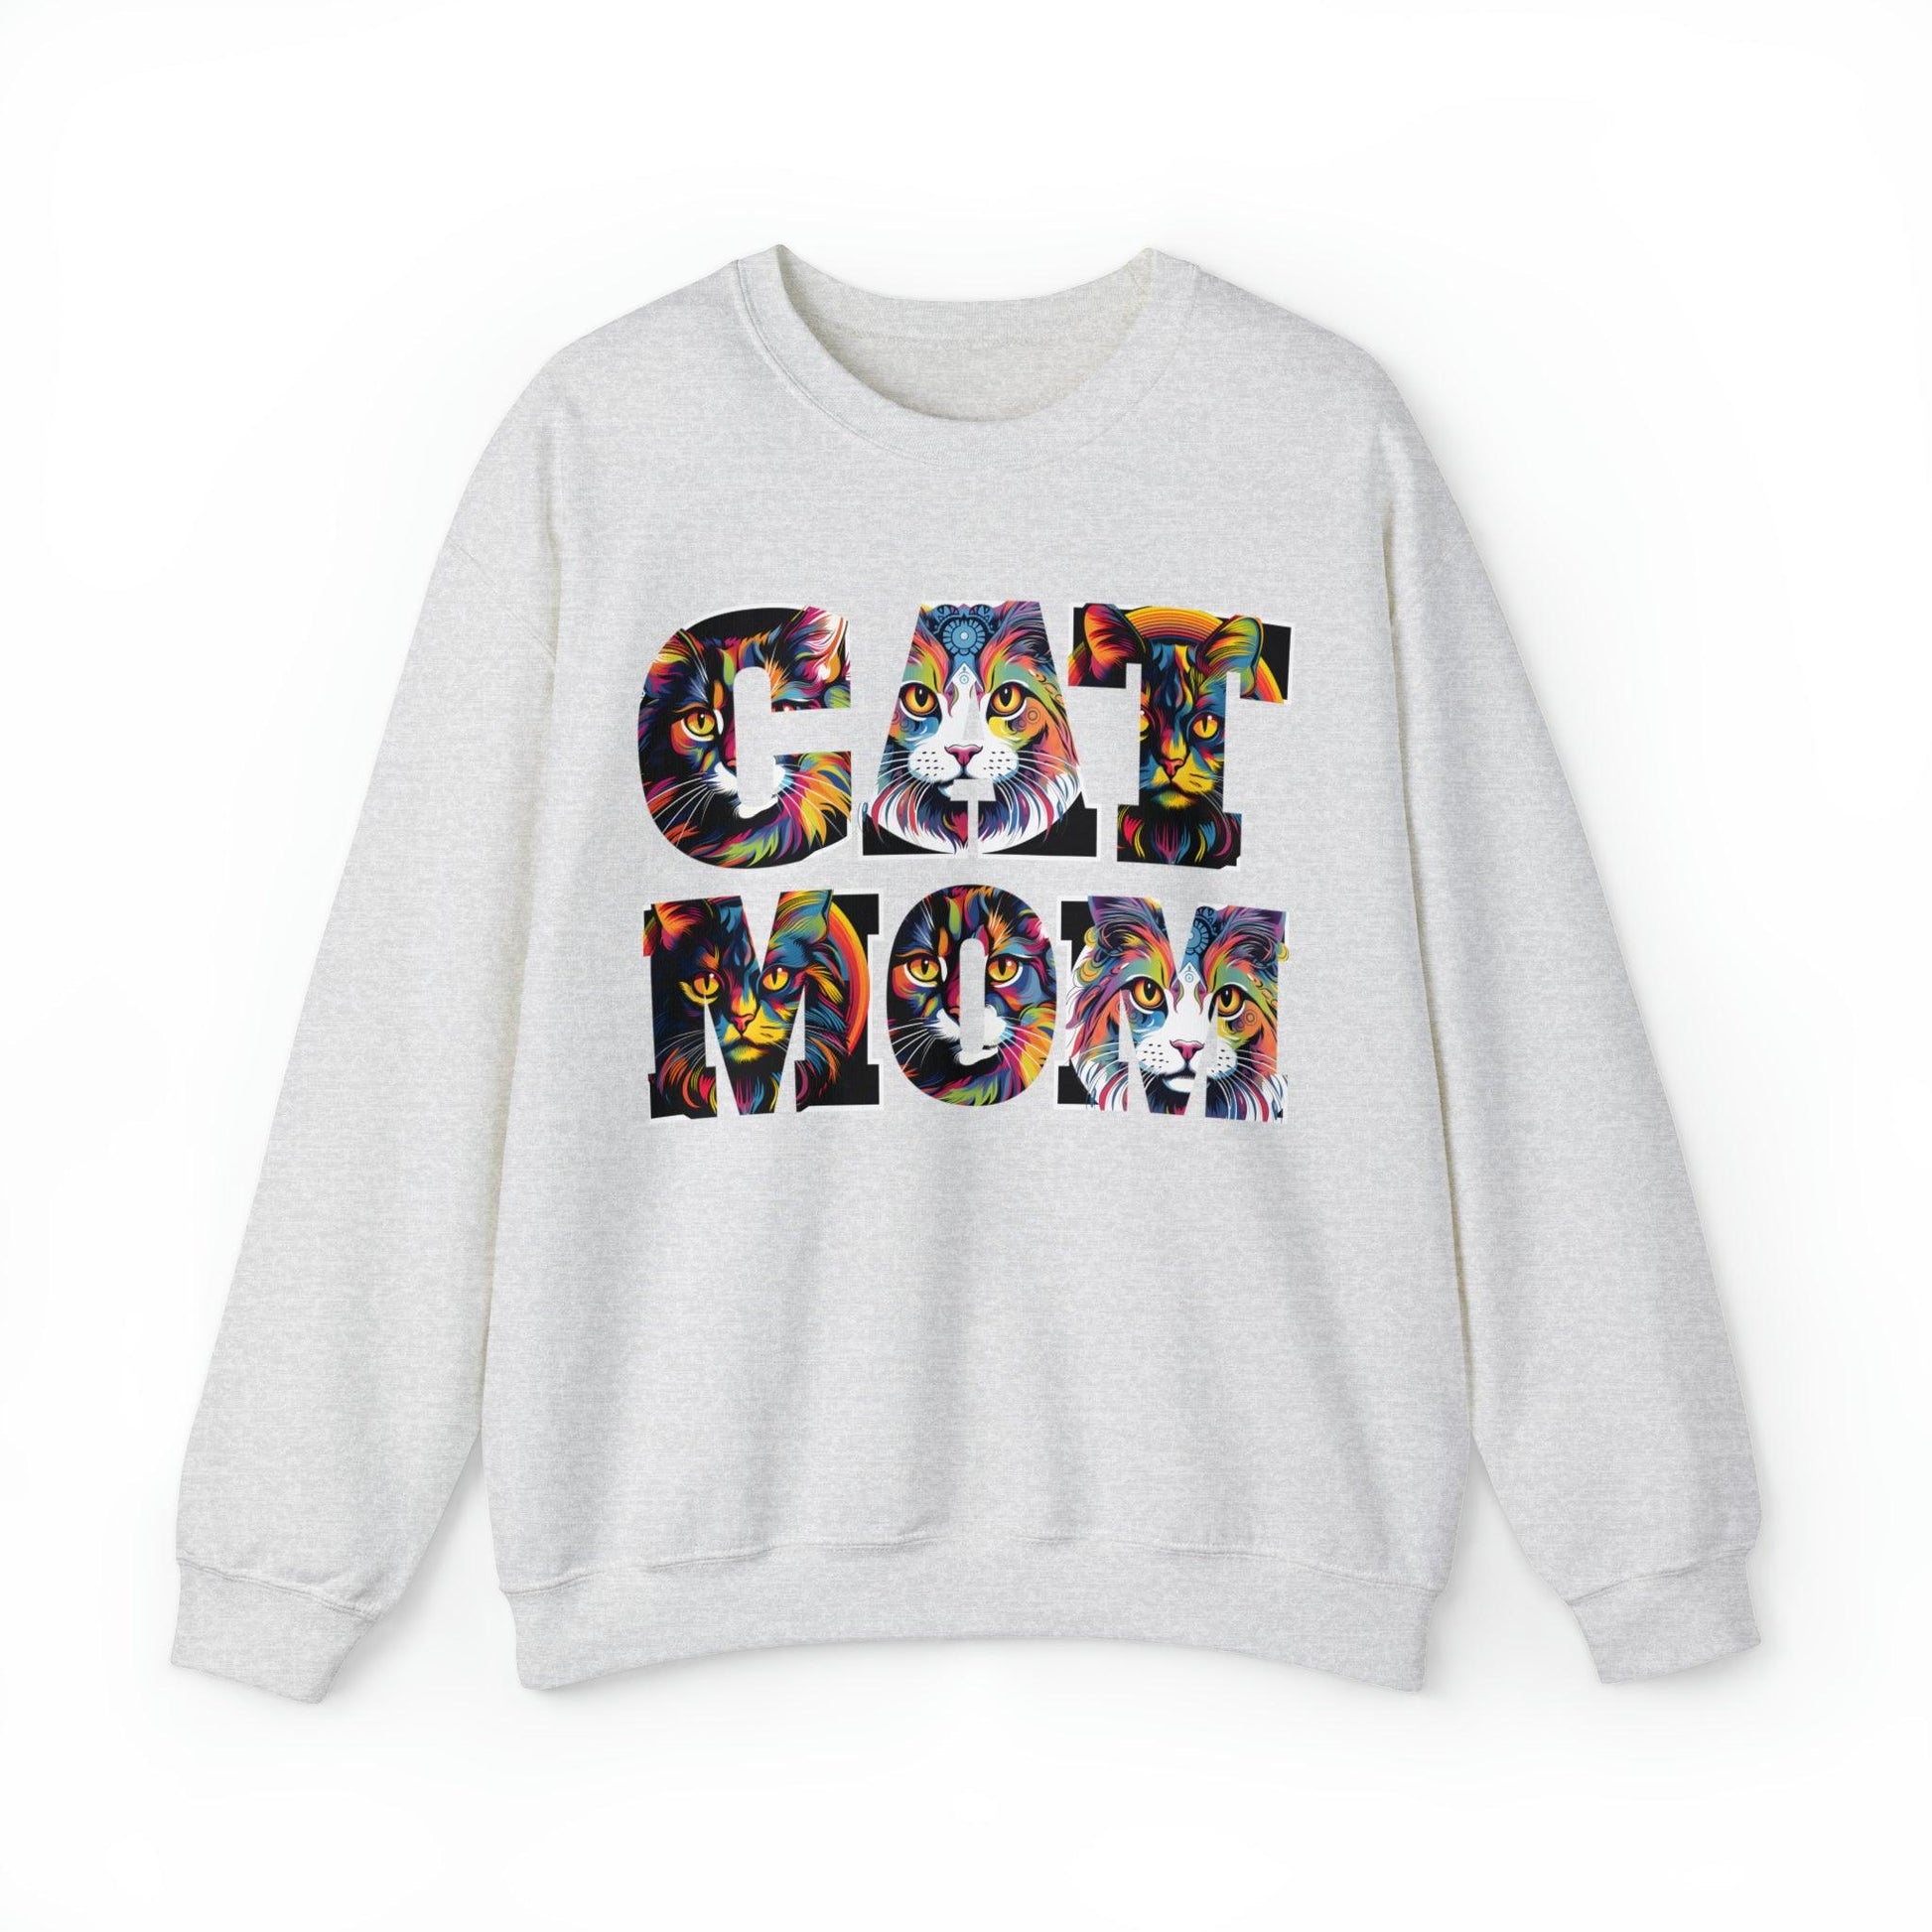 Vintage Cat Sweatshirt Cat Mom Sweatshirt Cat Crewneck Sweatshirt Cat Mom Gift Cat Lover Gift Animal Lover Cat Mama Shirt Cat Lover Sweater - Giftsmojo